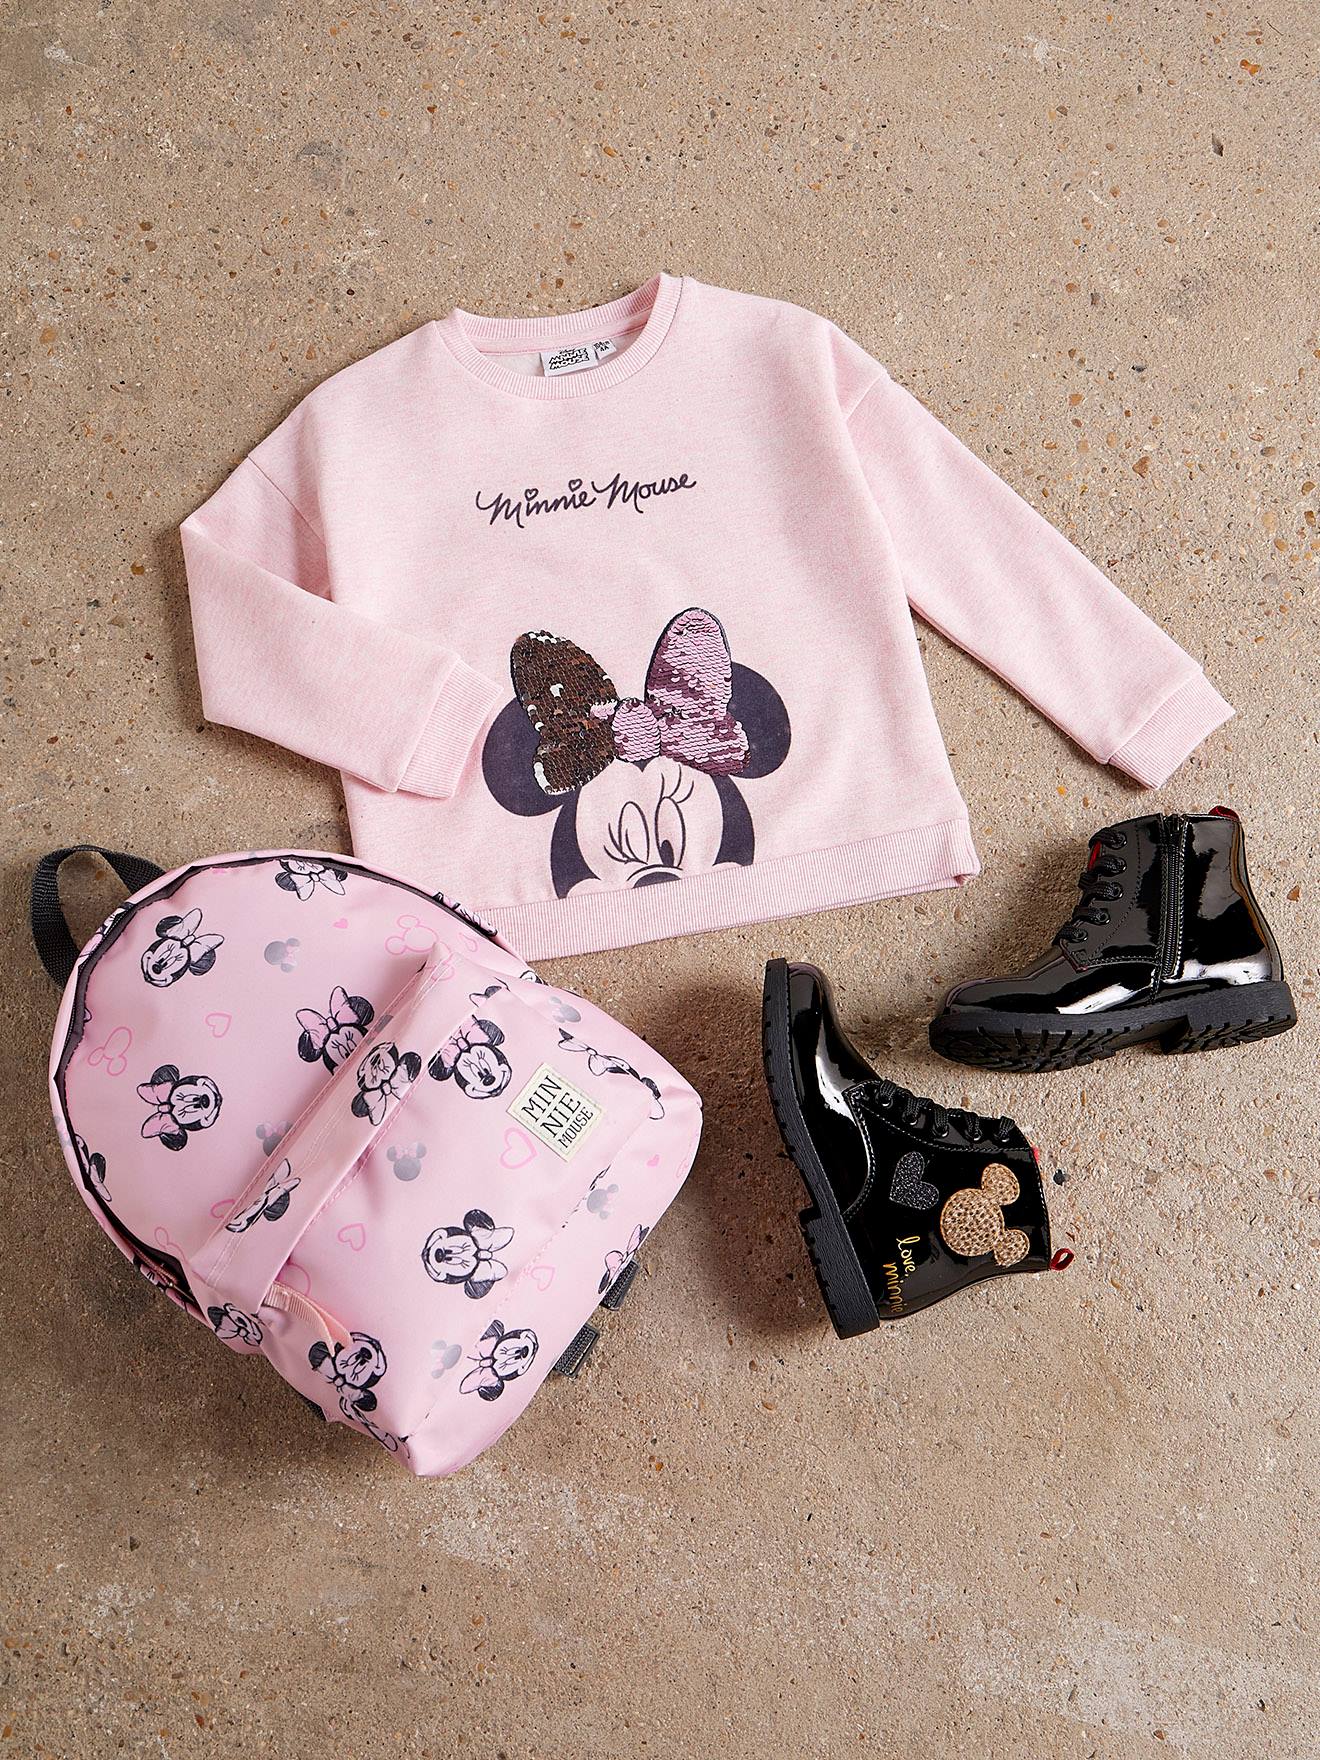 Kleines Kleid Gilet pour fille Disney Minnie Mouse sans manches en taille 74 80 86 92 98 104 110 Pollunder Veste zippée pour 1 2 3 ans 